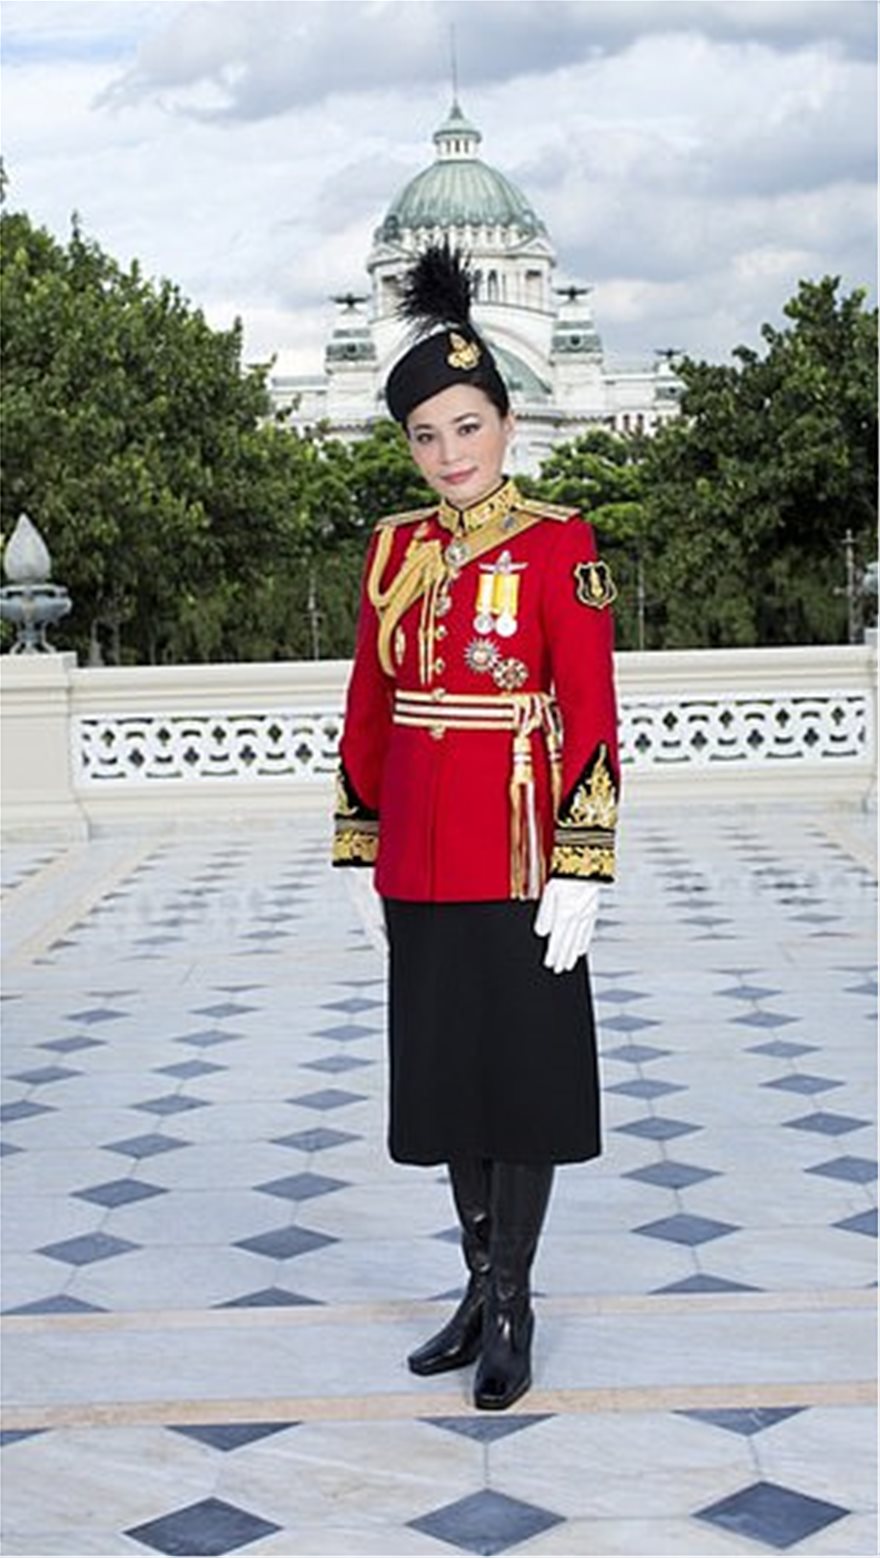 Ταϊλάνδη: H νέα σύζυγος του «βασιλιά με το μπουστάκι» ποζάρει με 20 στολές και... σουρεάλ photoshop! - Φωτογραφία 10